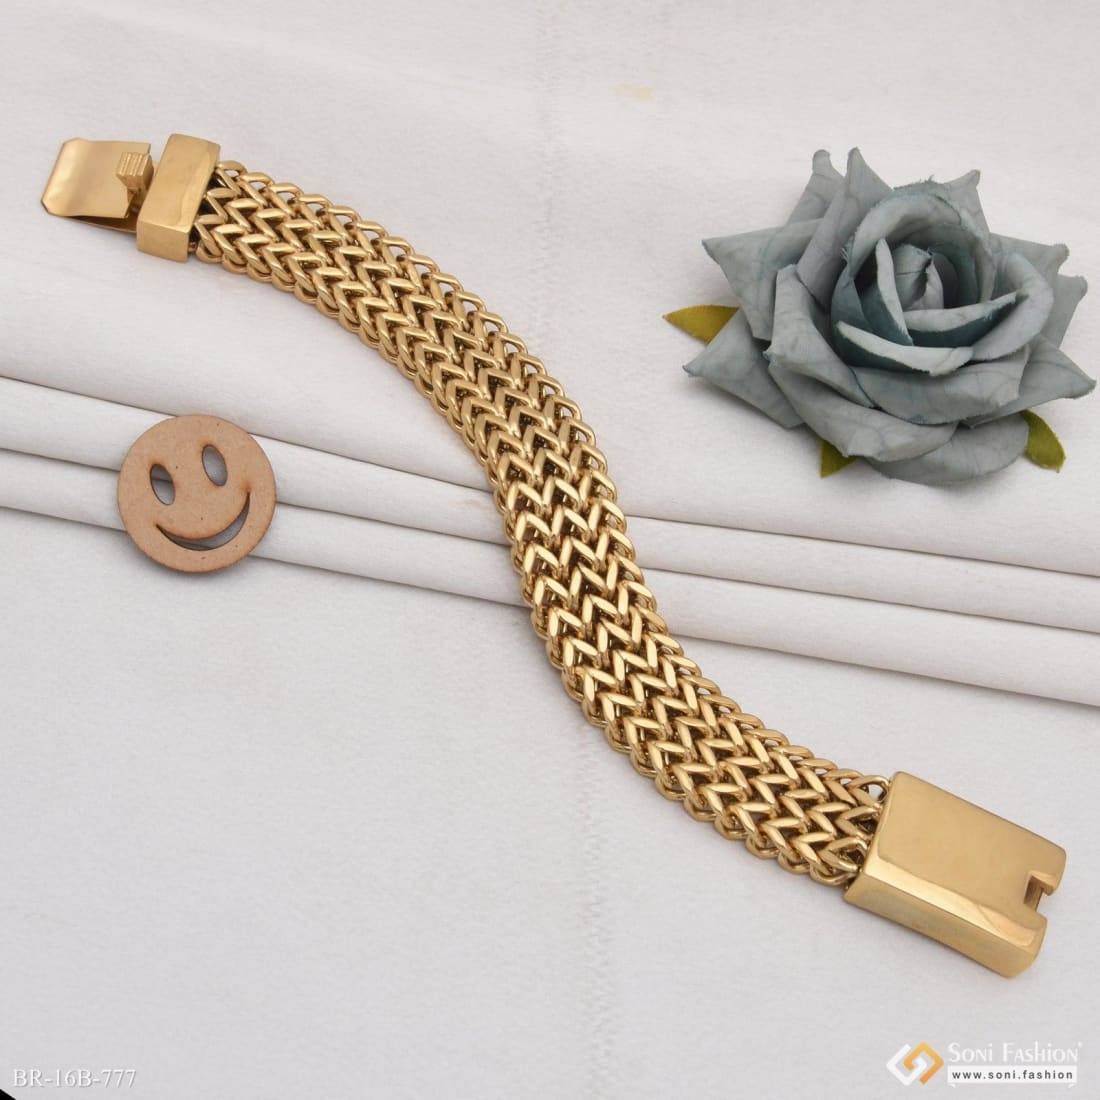 Cartier - 18k Woven Gold Watch Bracelet by Cartier